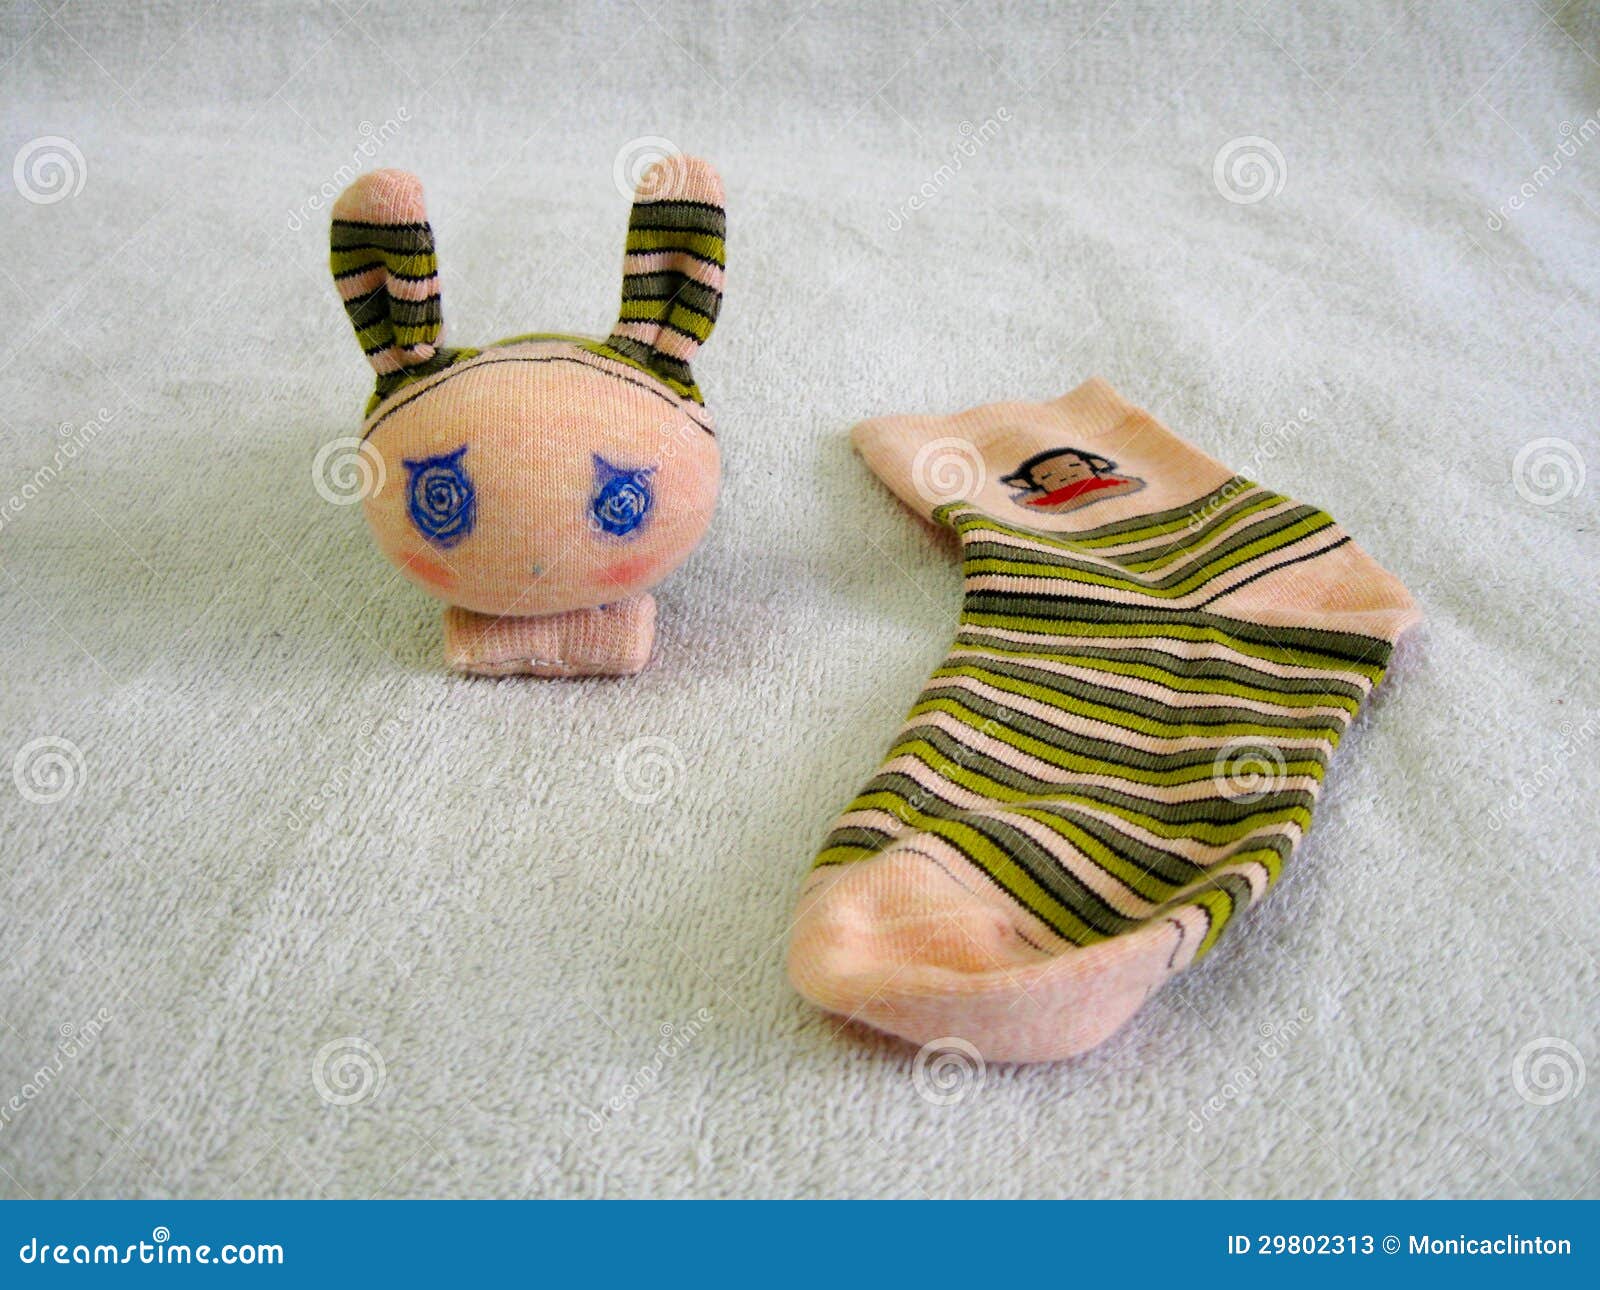 Sömnig kanin som göras av sockor. Denna kanindocka göras av sockor. den visar intressant användning av sockan. och dess mycket lätt och kunde vara hemlagat.